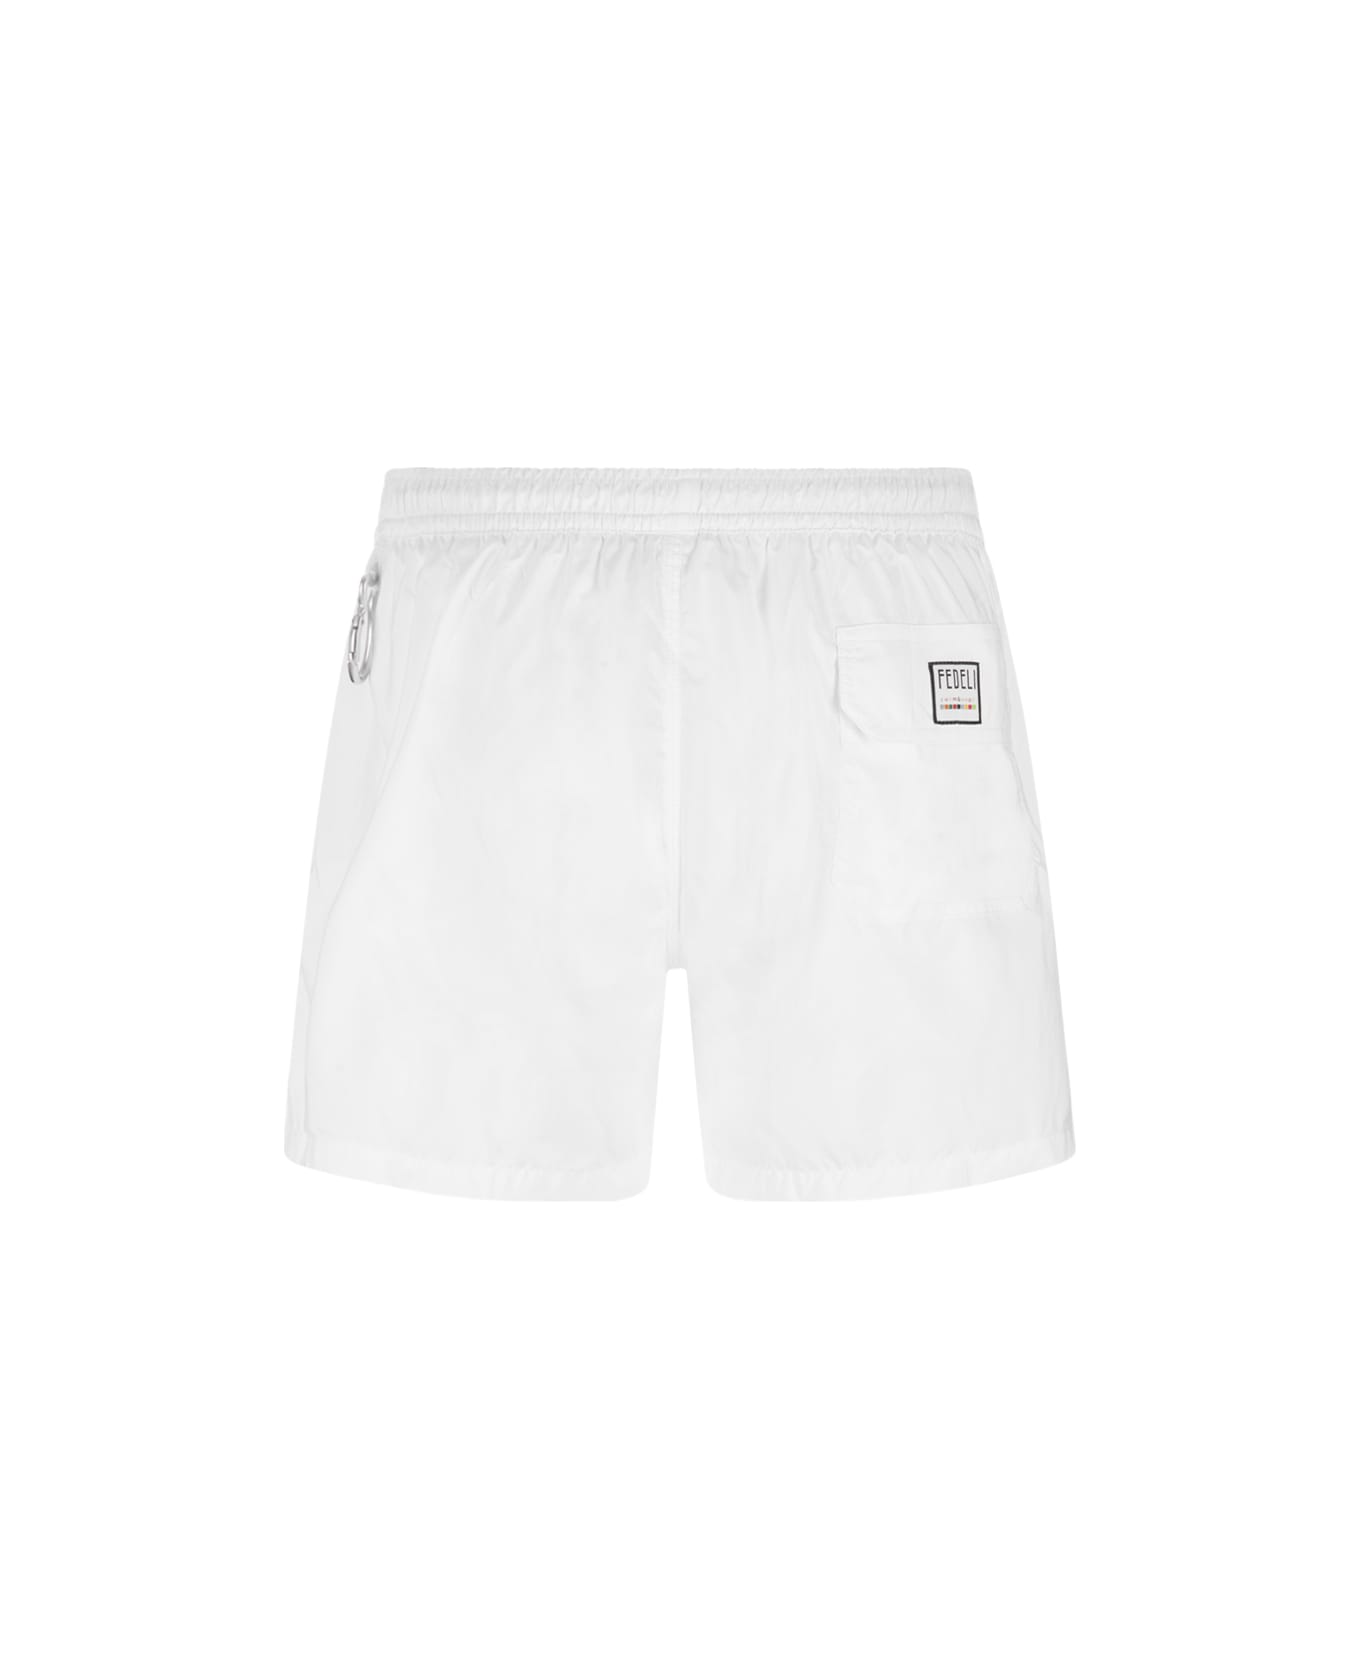 Fedeli White Swim Shorts - White スイムトランクス